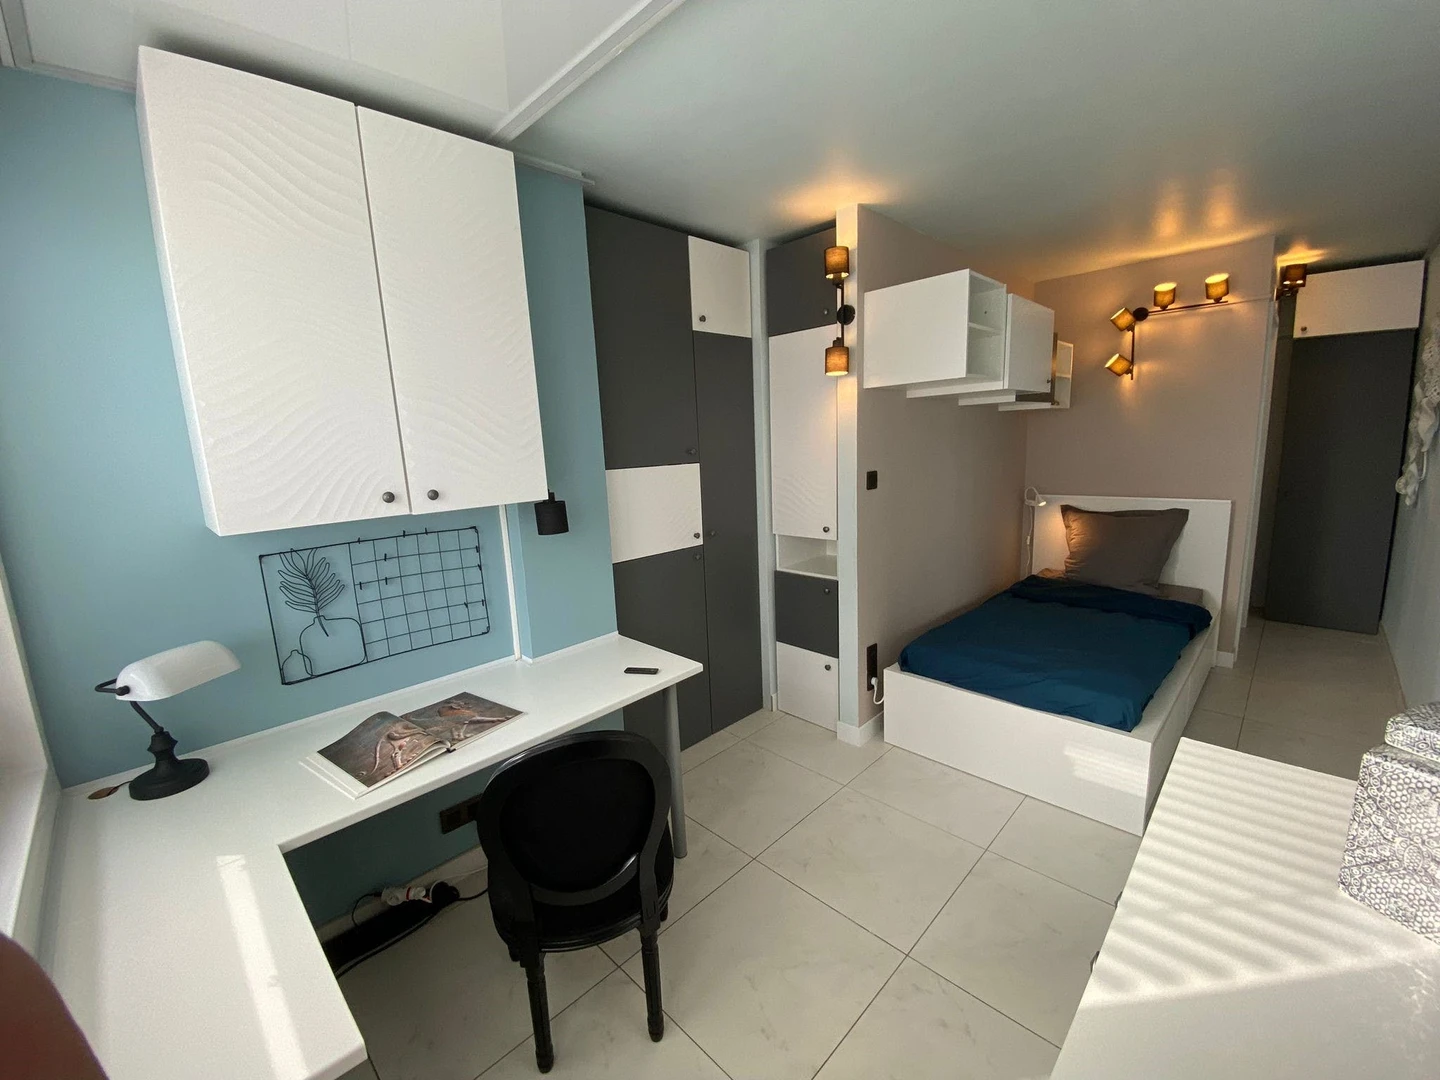 Habitación en alquiler con cama doble Estrasburgo